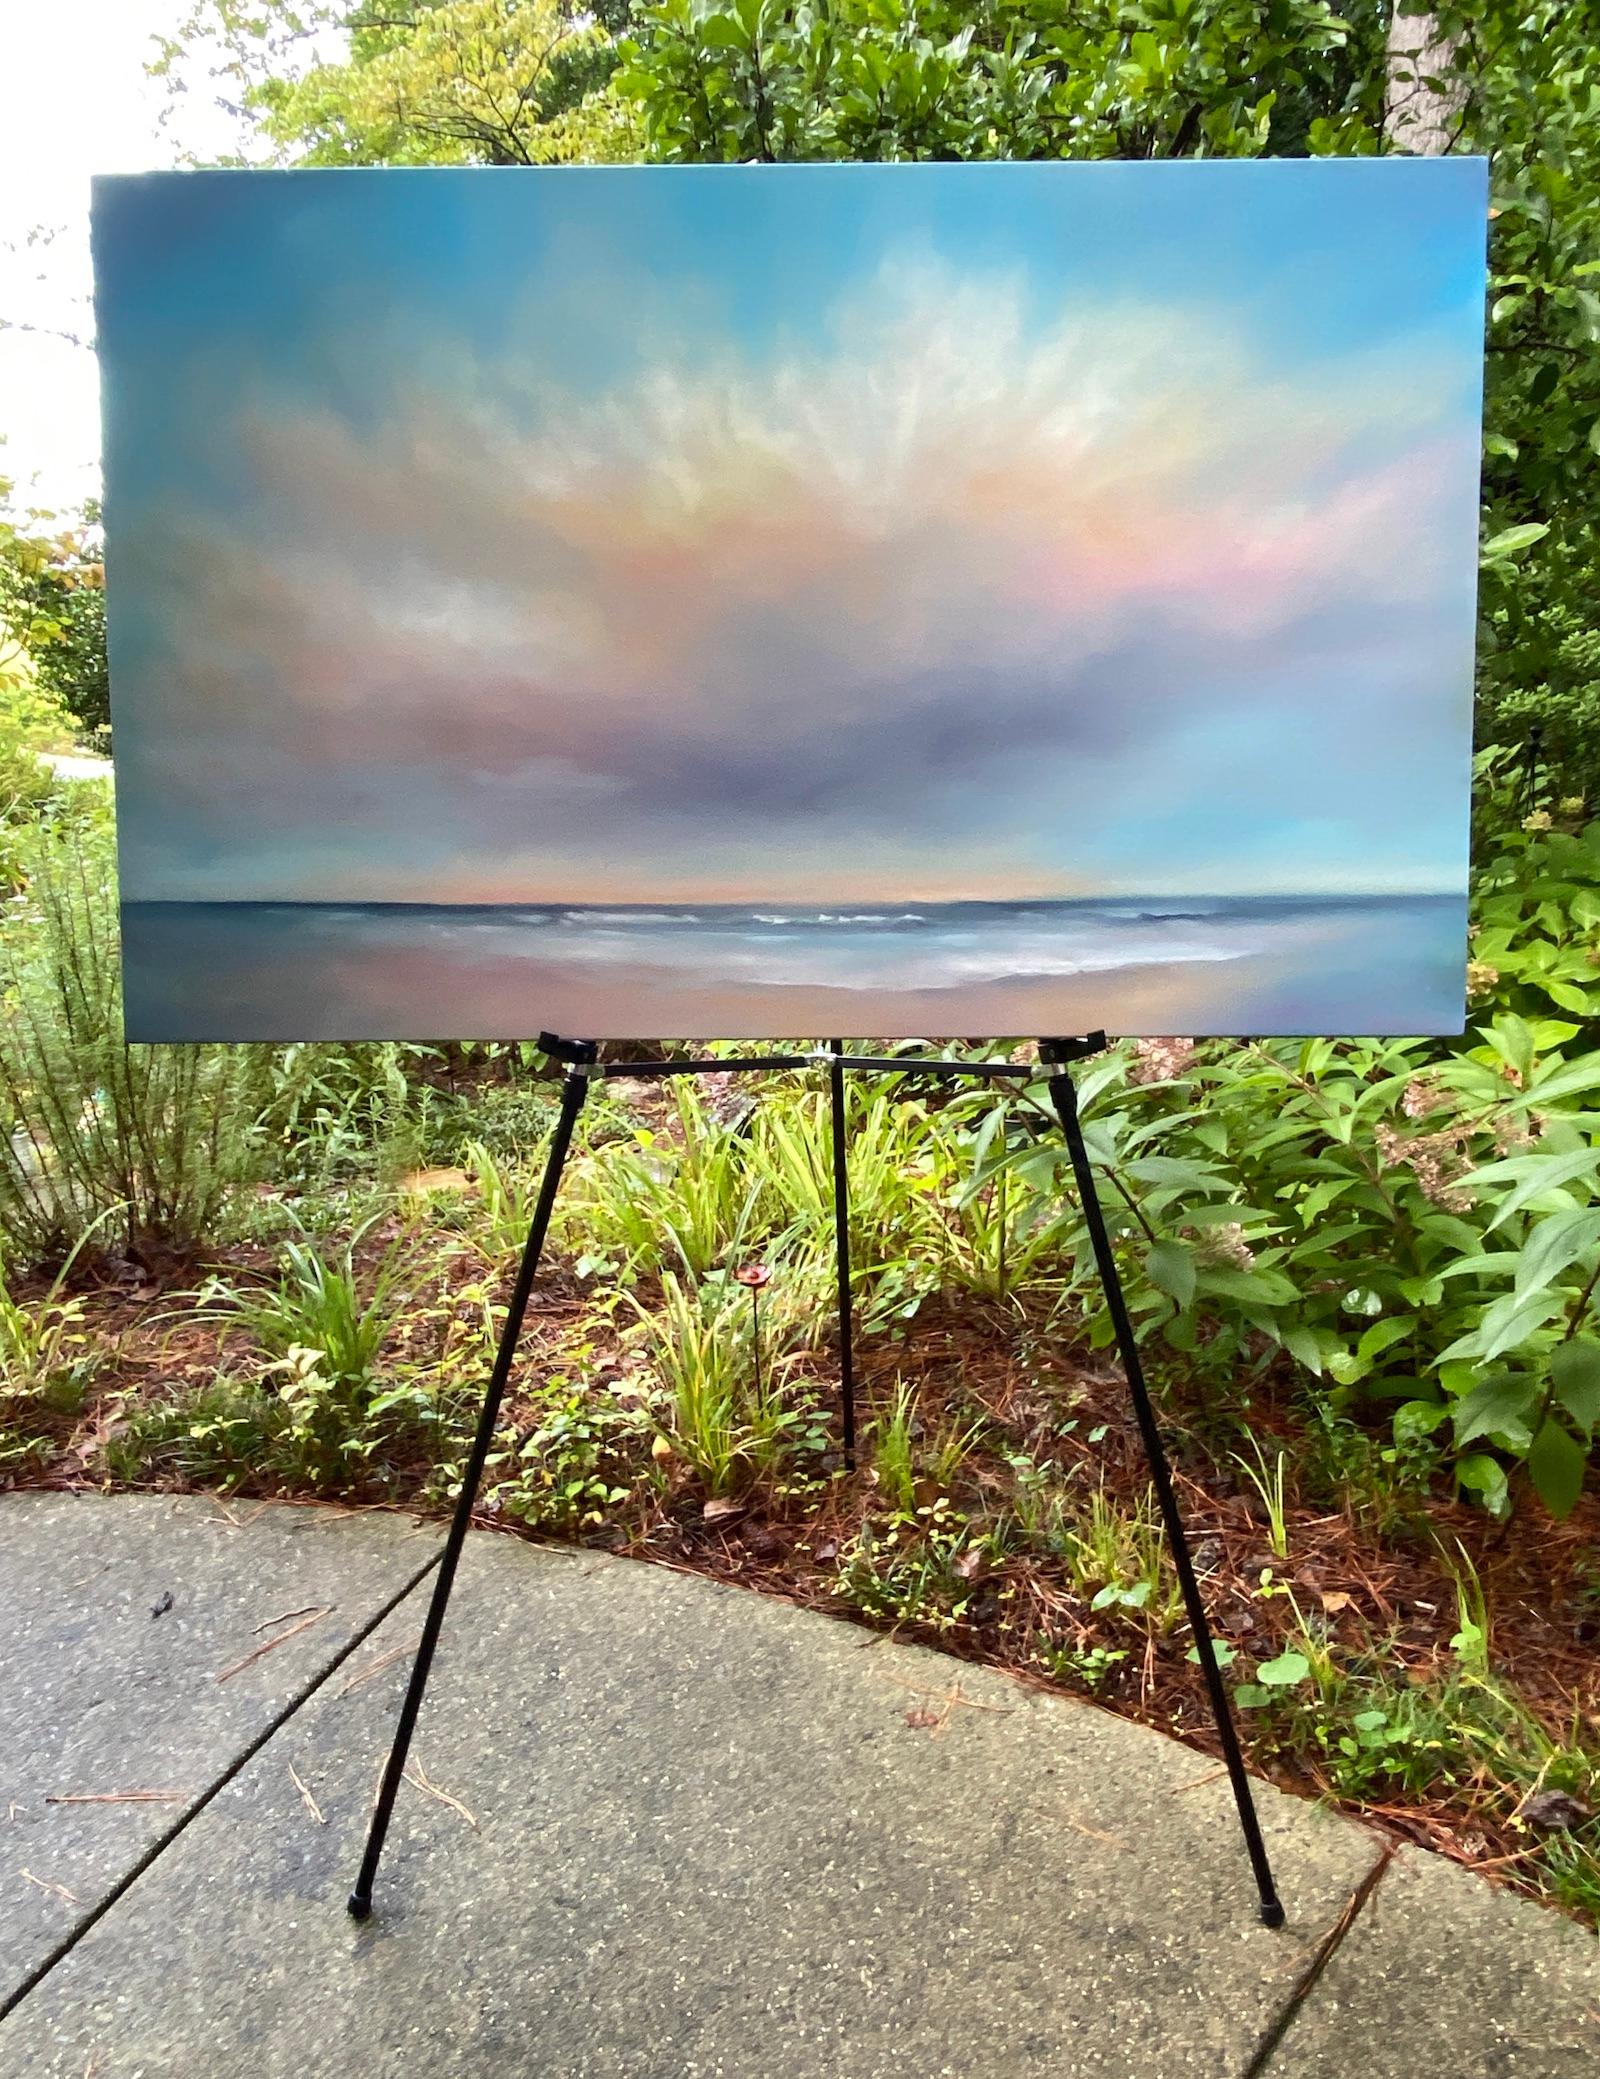 <p>Commentaires de l'artisteS'appuyant sur l'observation et l'imagination, l'artiste Nancy Hughes Miller peint un ciel côtier au petit matin.<br /> Un nuage se déplace sur l'océan tandis que la lumière du soleil projette des teintes roses, orange et